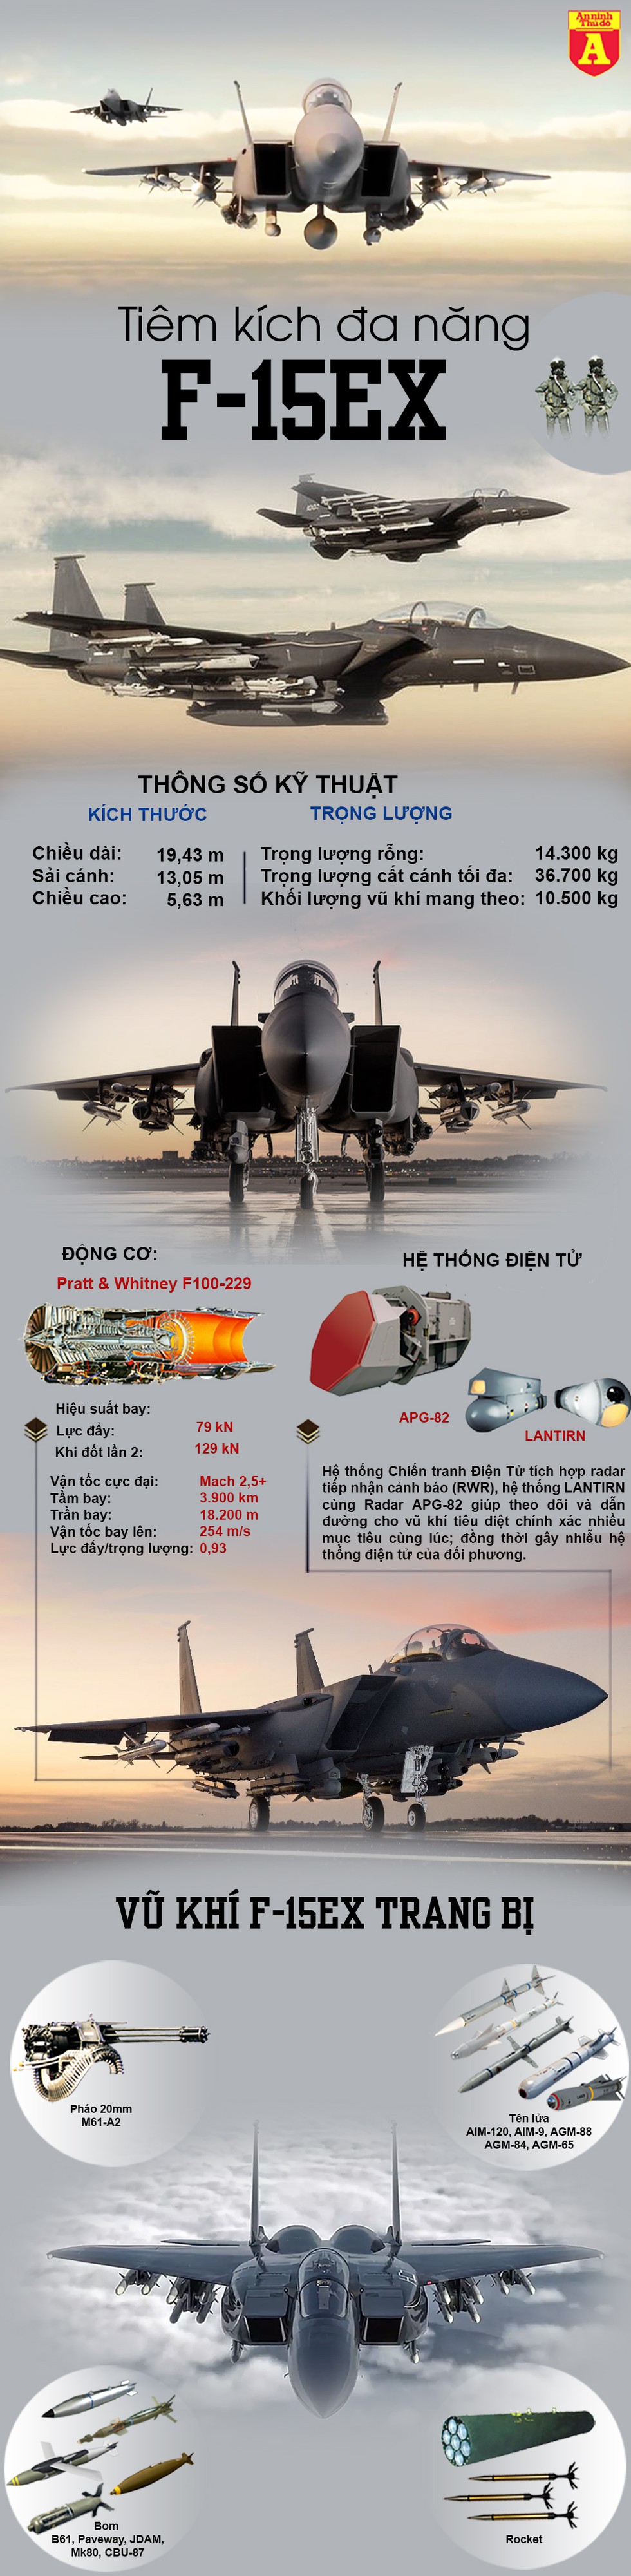 [Infographics] Mỹ vừa dùng F-15EX vừa "tung đòn" hạ bệ Su-35 và Su-57 Nga - Ảnh 1